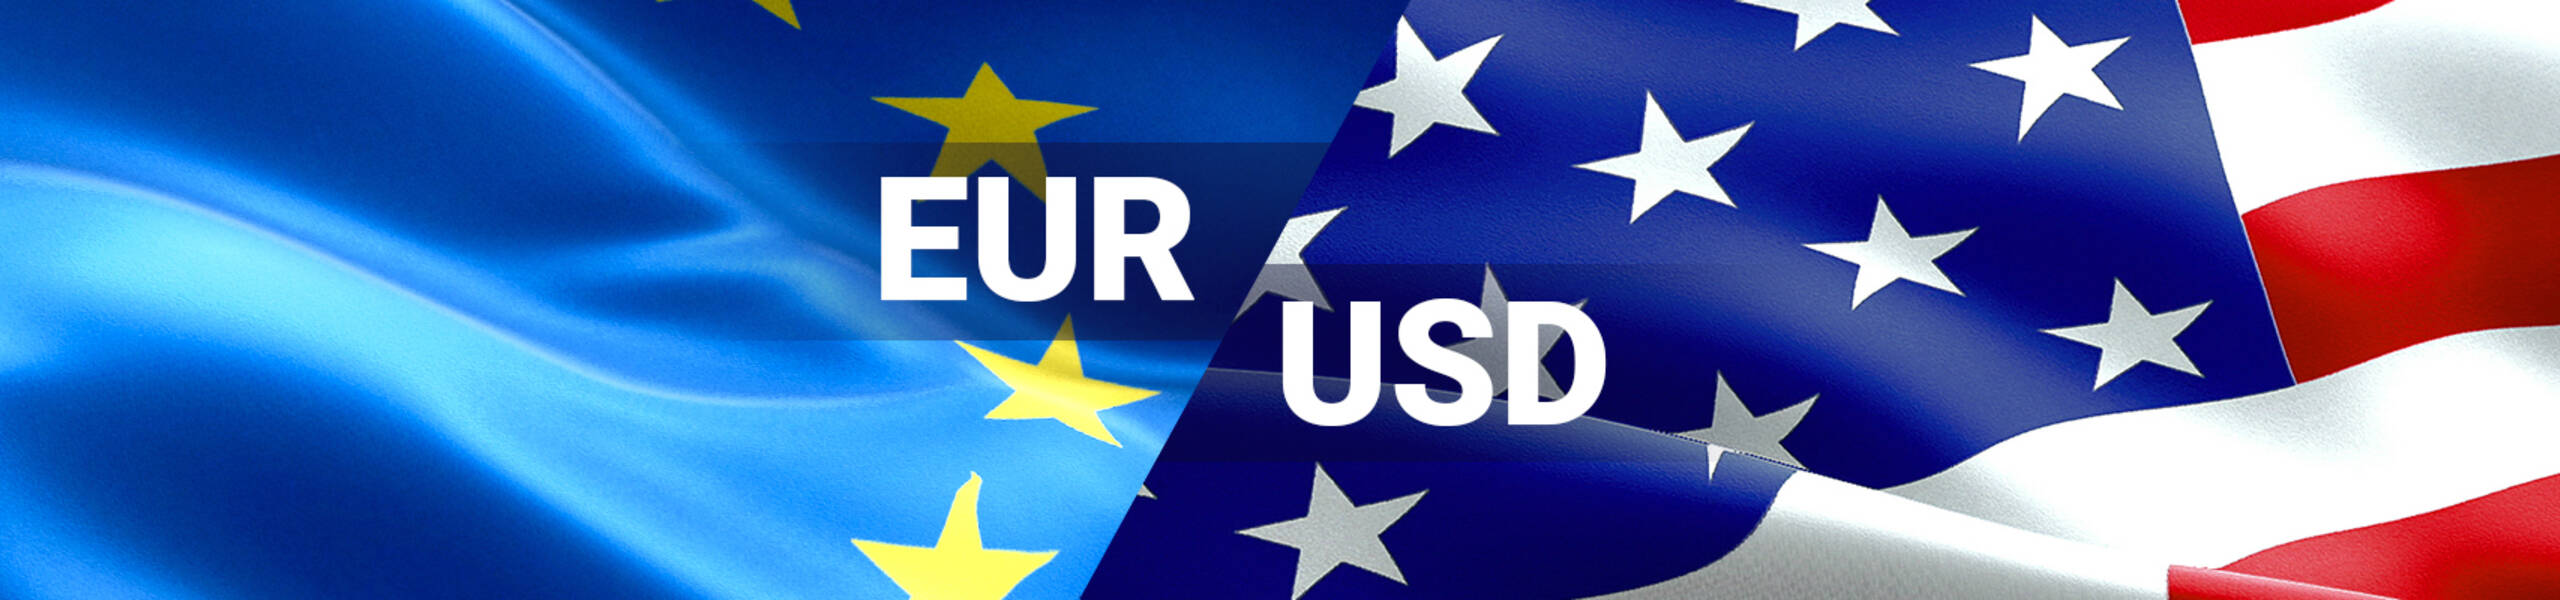 EUR/USD テクニカル分析 2017/09/19